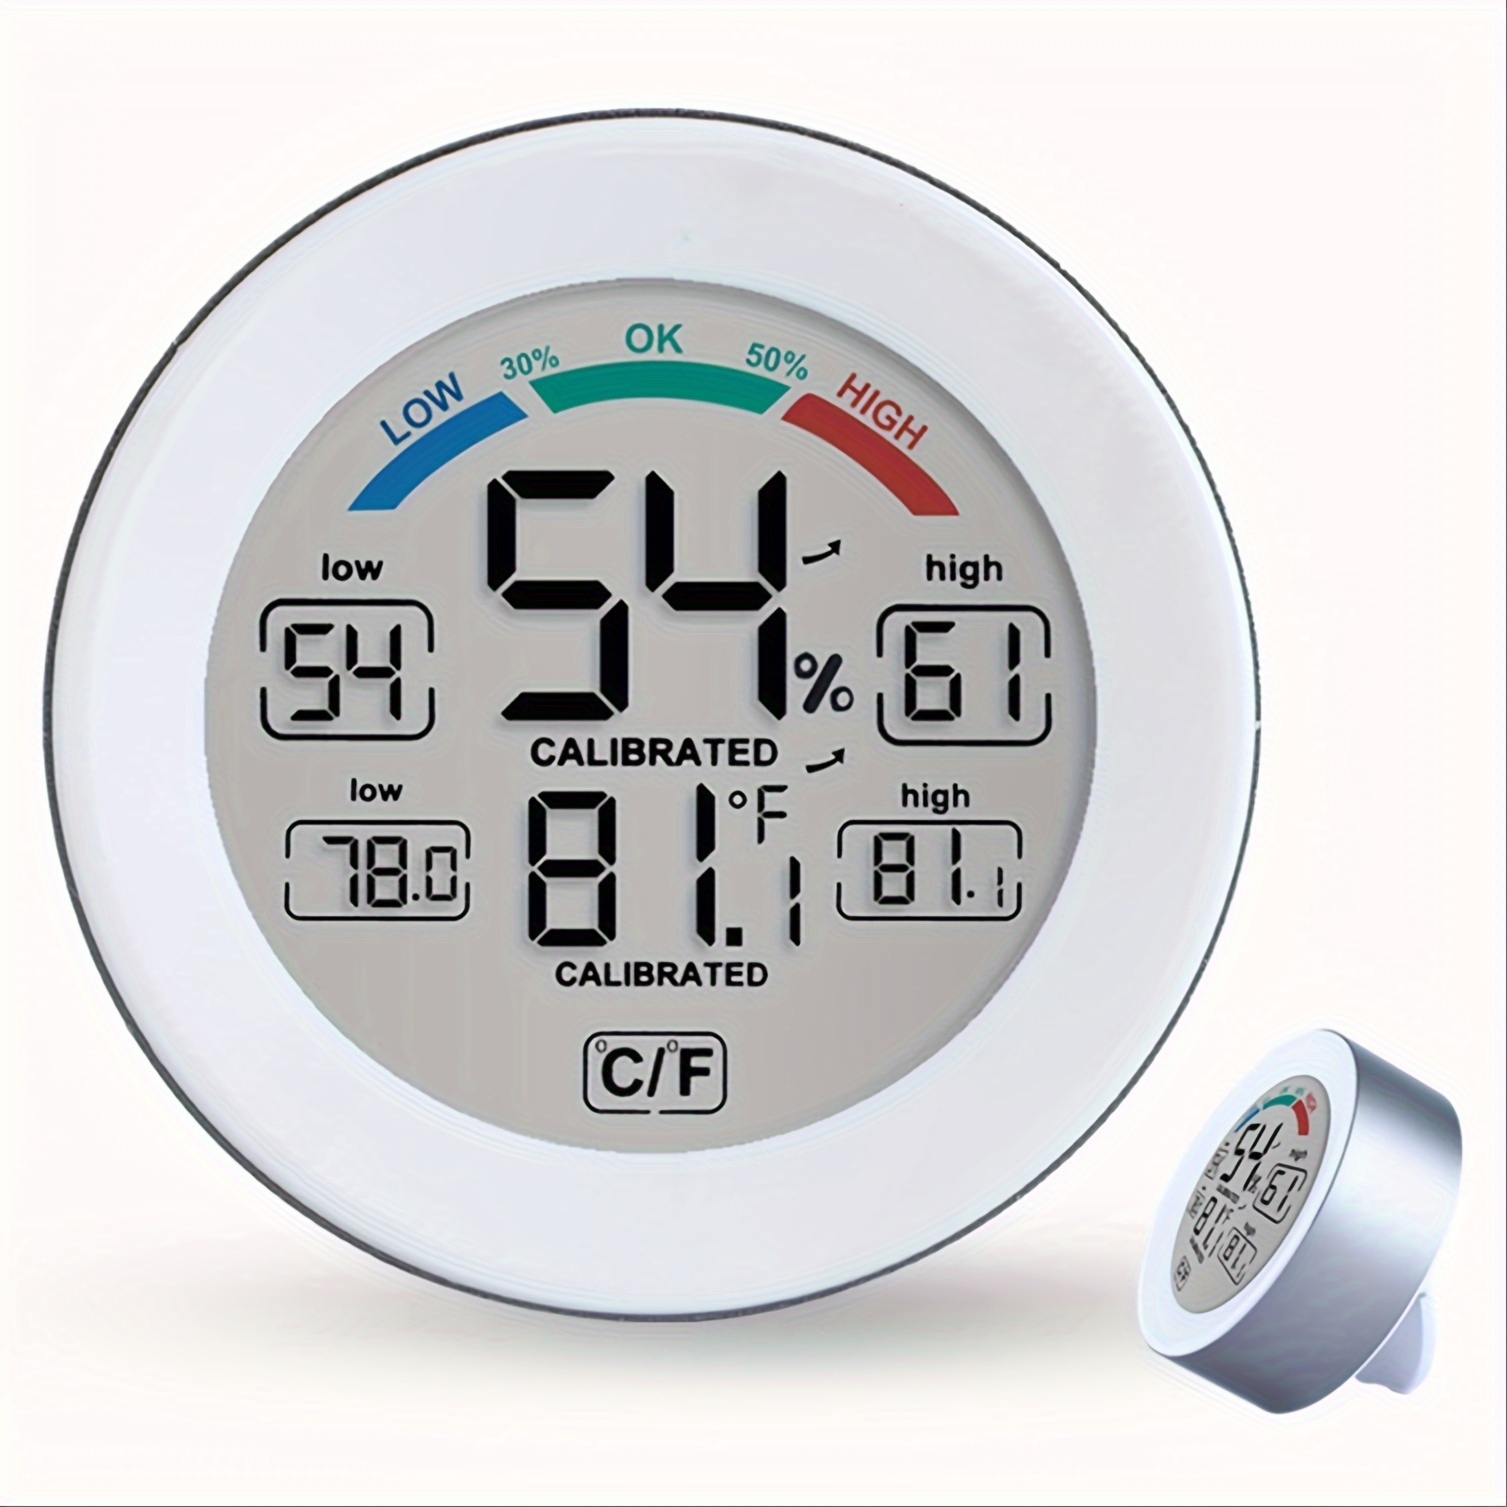 Thermomètre Frontal Adulte, Wawech Thermometre Infrarouge pour Adulte  Enfant, Thermometre sans contact, Écran LCD, Fonction M